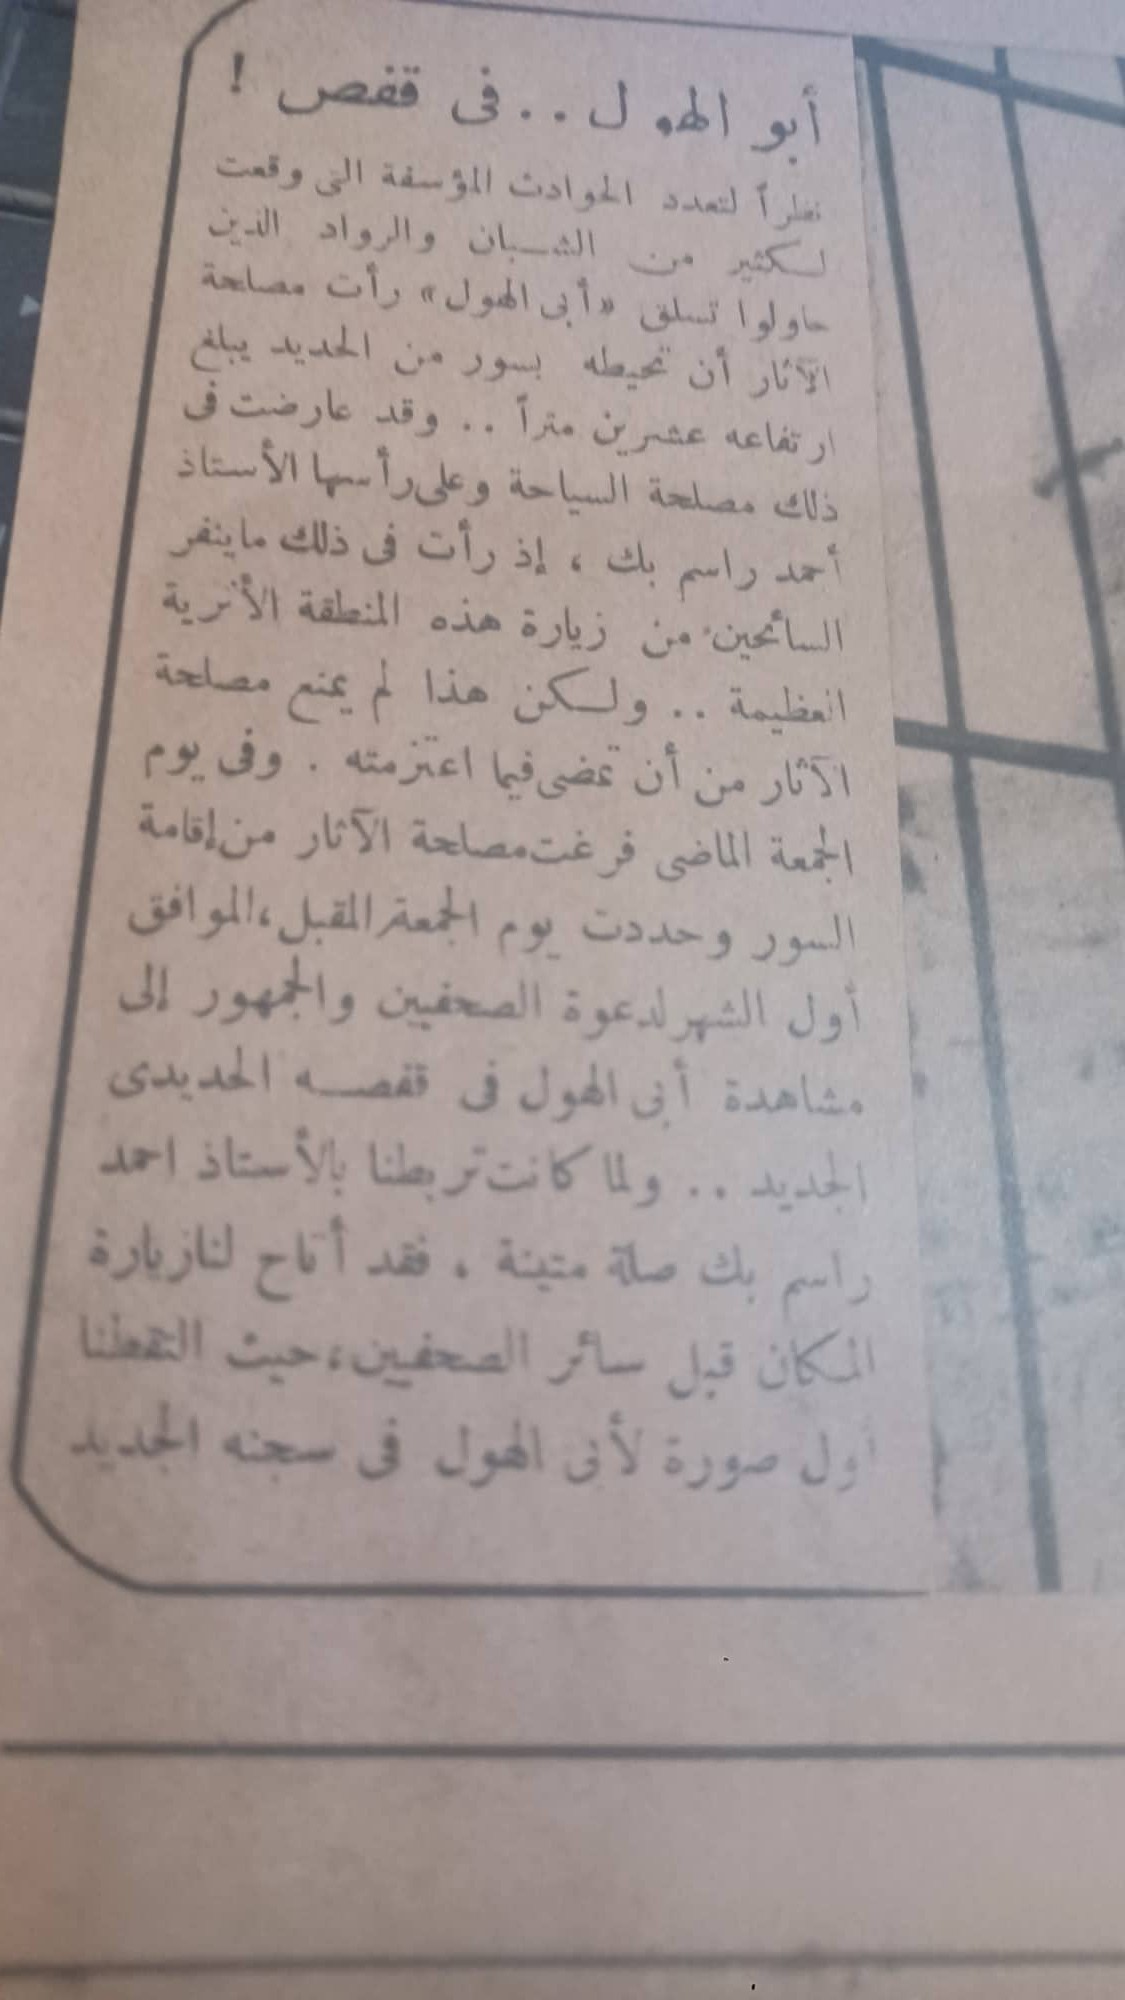 أرشيف الصحف عام 1949م وقصة وضع القفص الحديدى حول أبو الهول لمنع تسلقه 